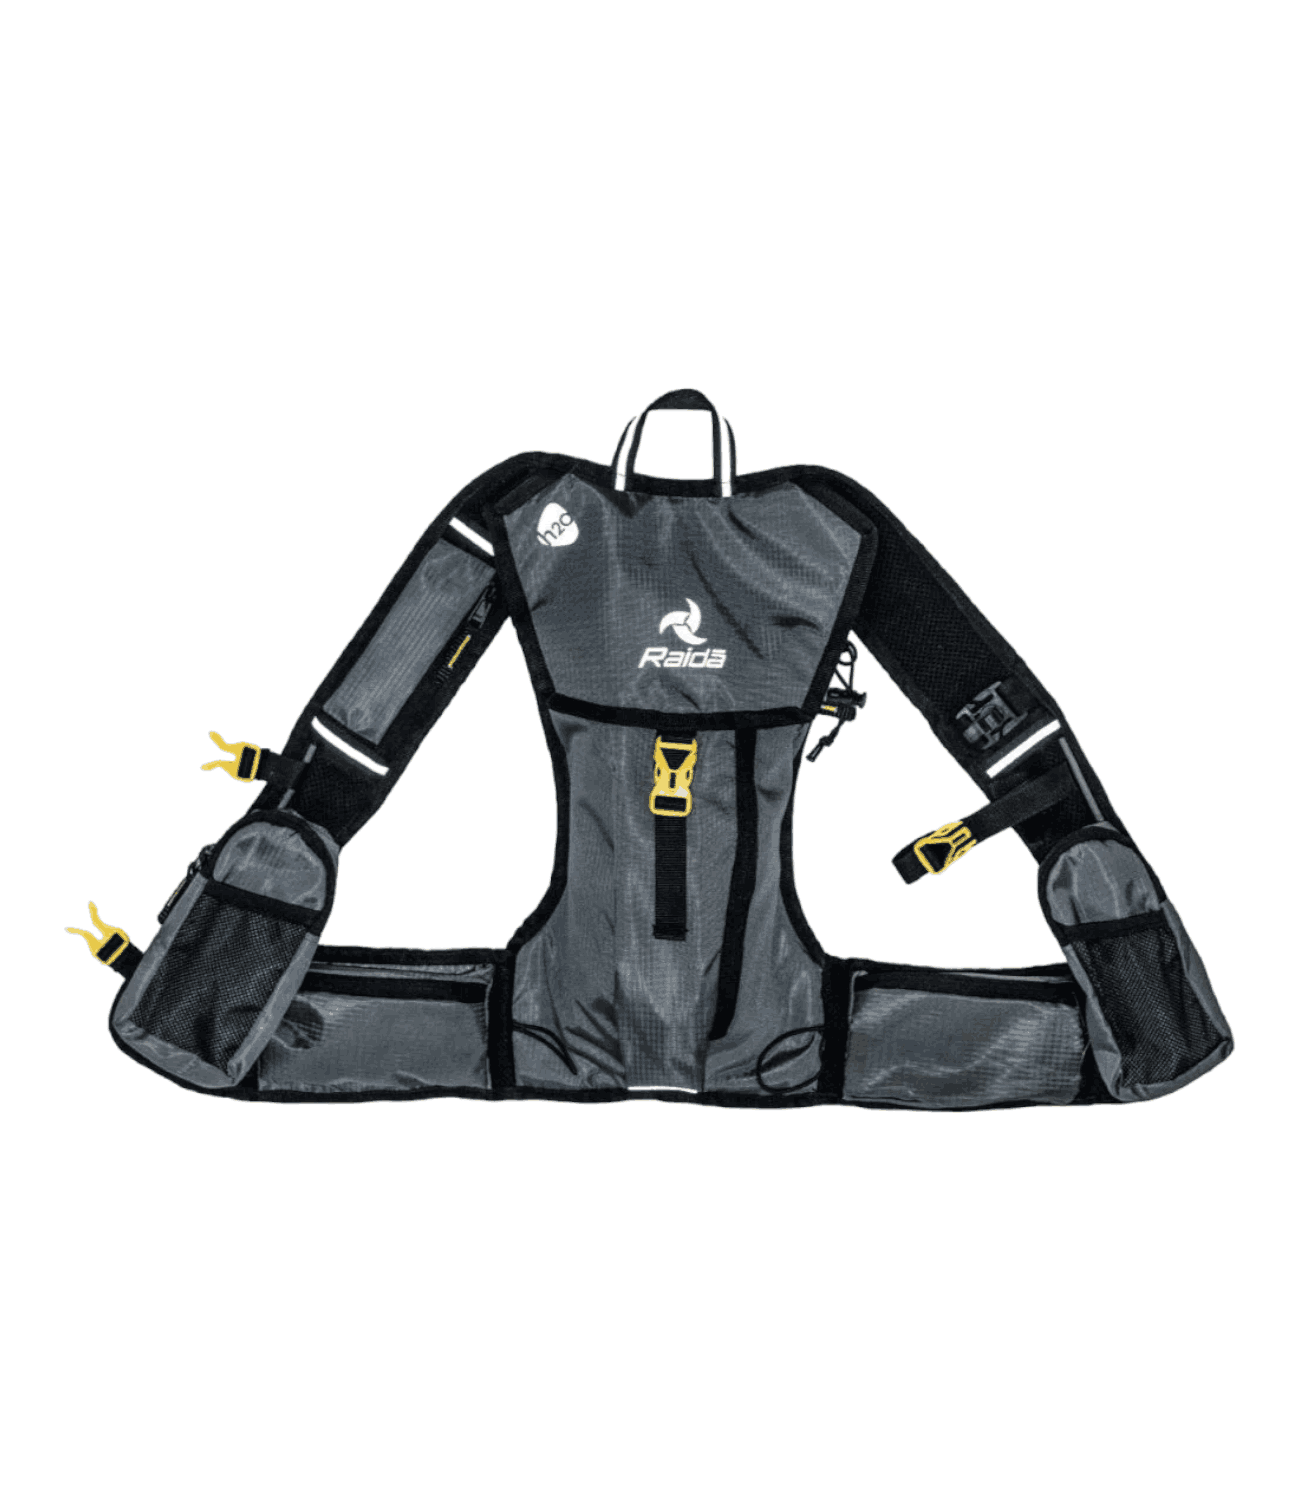 Raida Hydration Backpack – Ultra